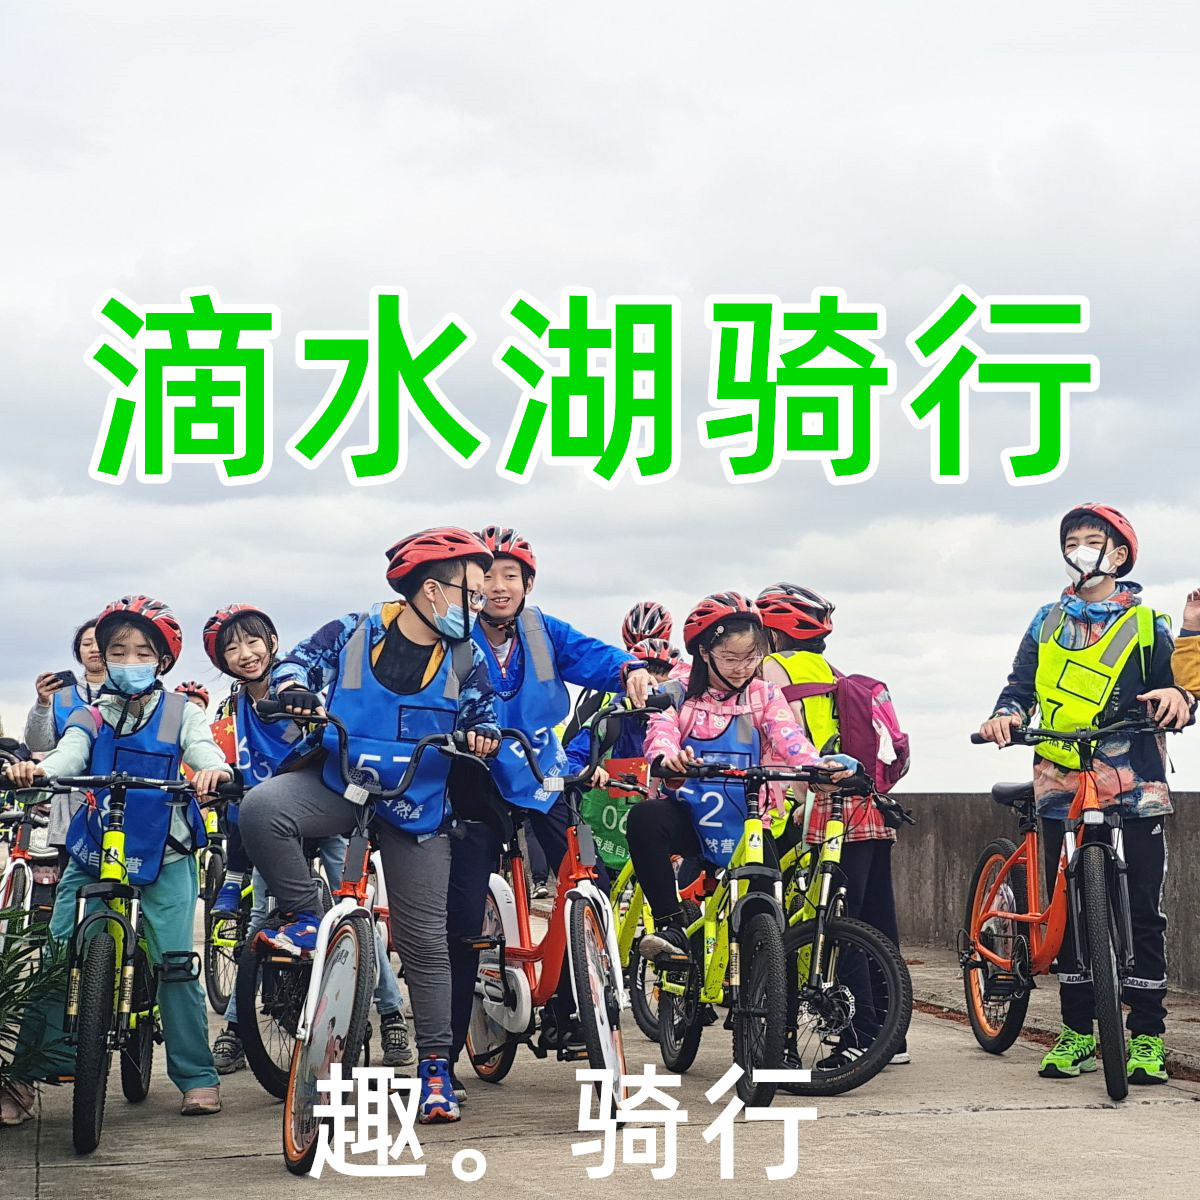 【1日骑行营】传骑少年，骑行在上海最舒适的季节——南汇滴水湖50KM骑行